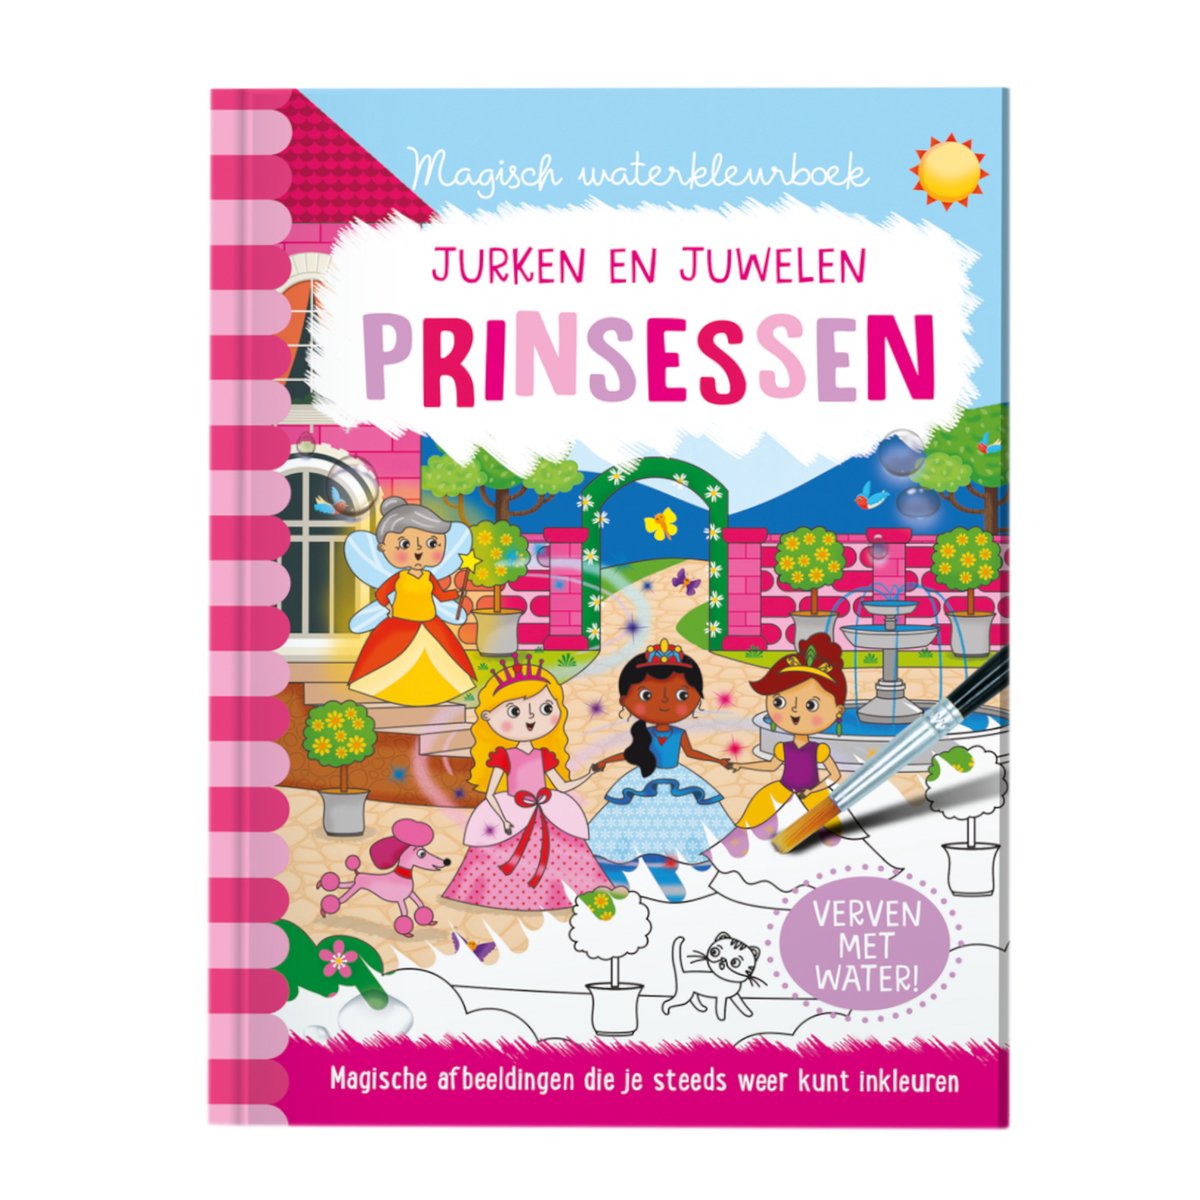 Magisch waterkleurboek Prinsessen - Lantaarn Publishers